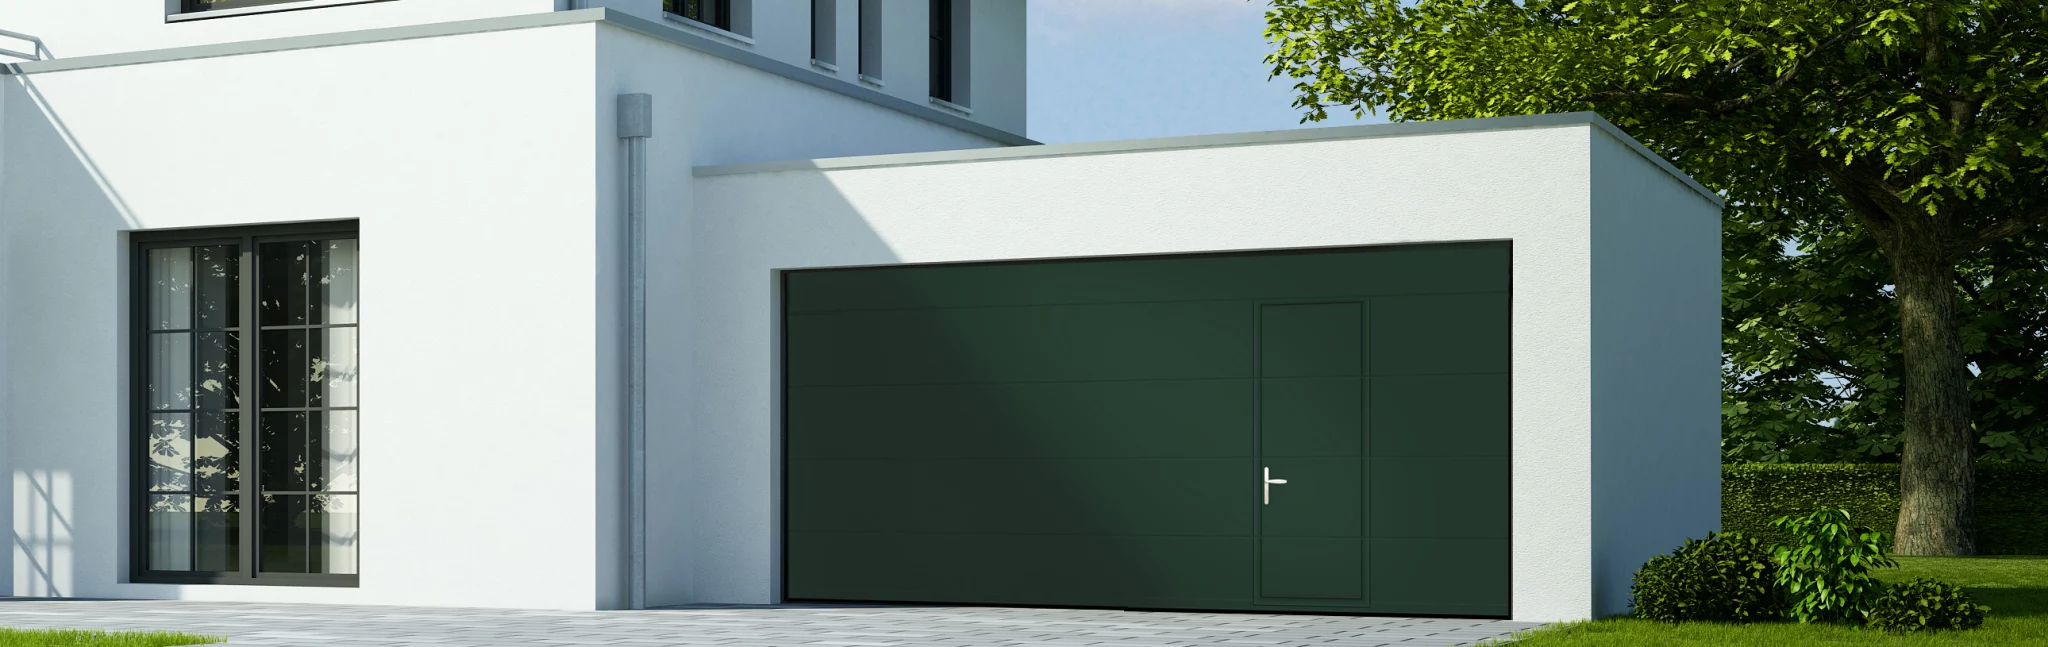 Maison moderne blanche équipée d'une porte de garage sectionnelle plafond verte et d'un portillon